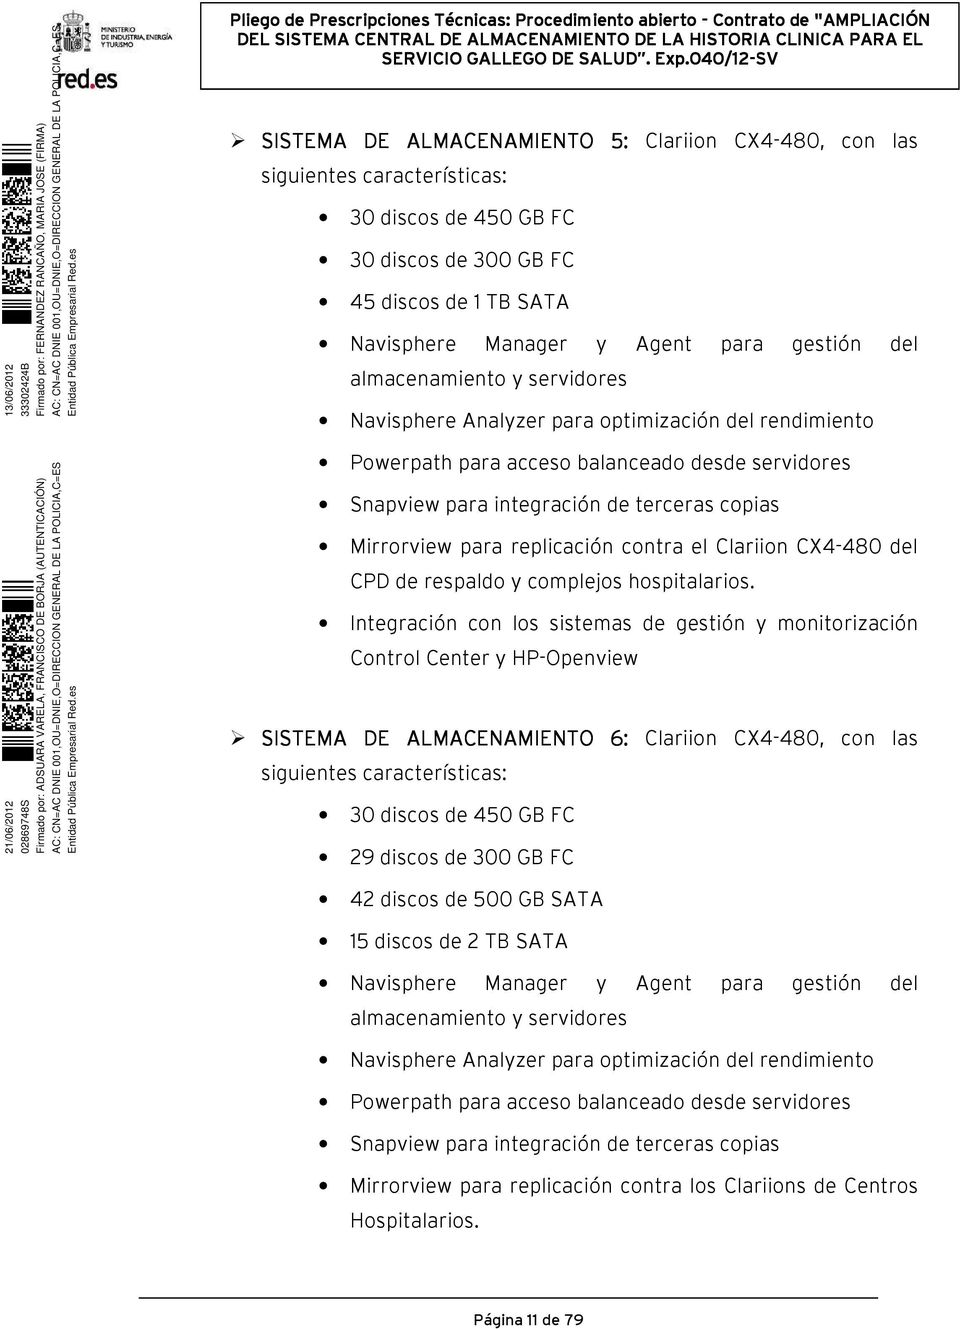 replicación contra el Clariion CX4-480 del CPD de respaldo y complejos hospitalarios.